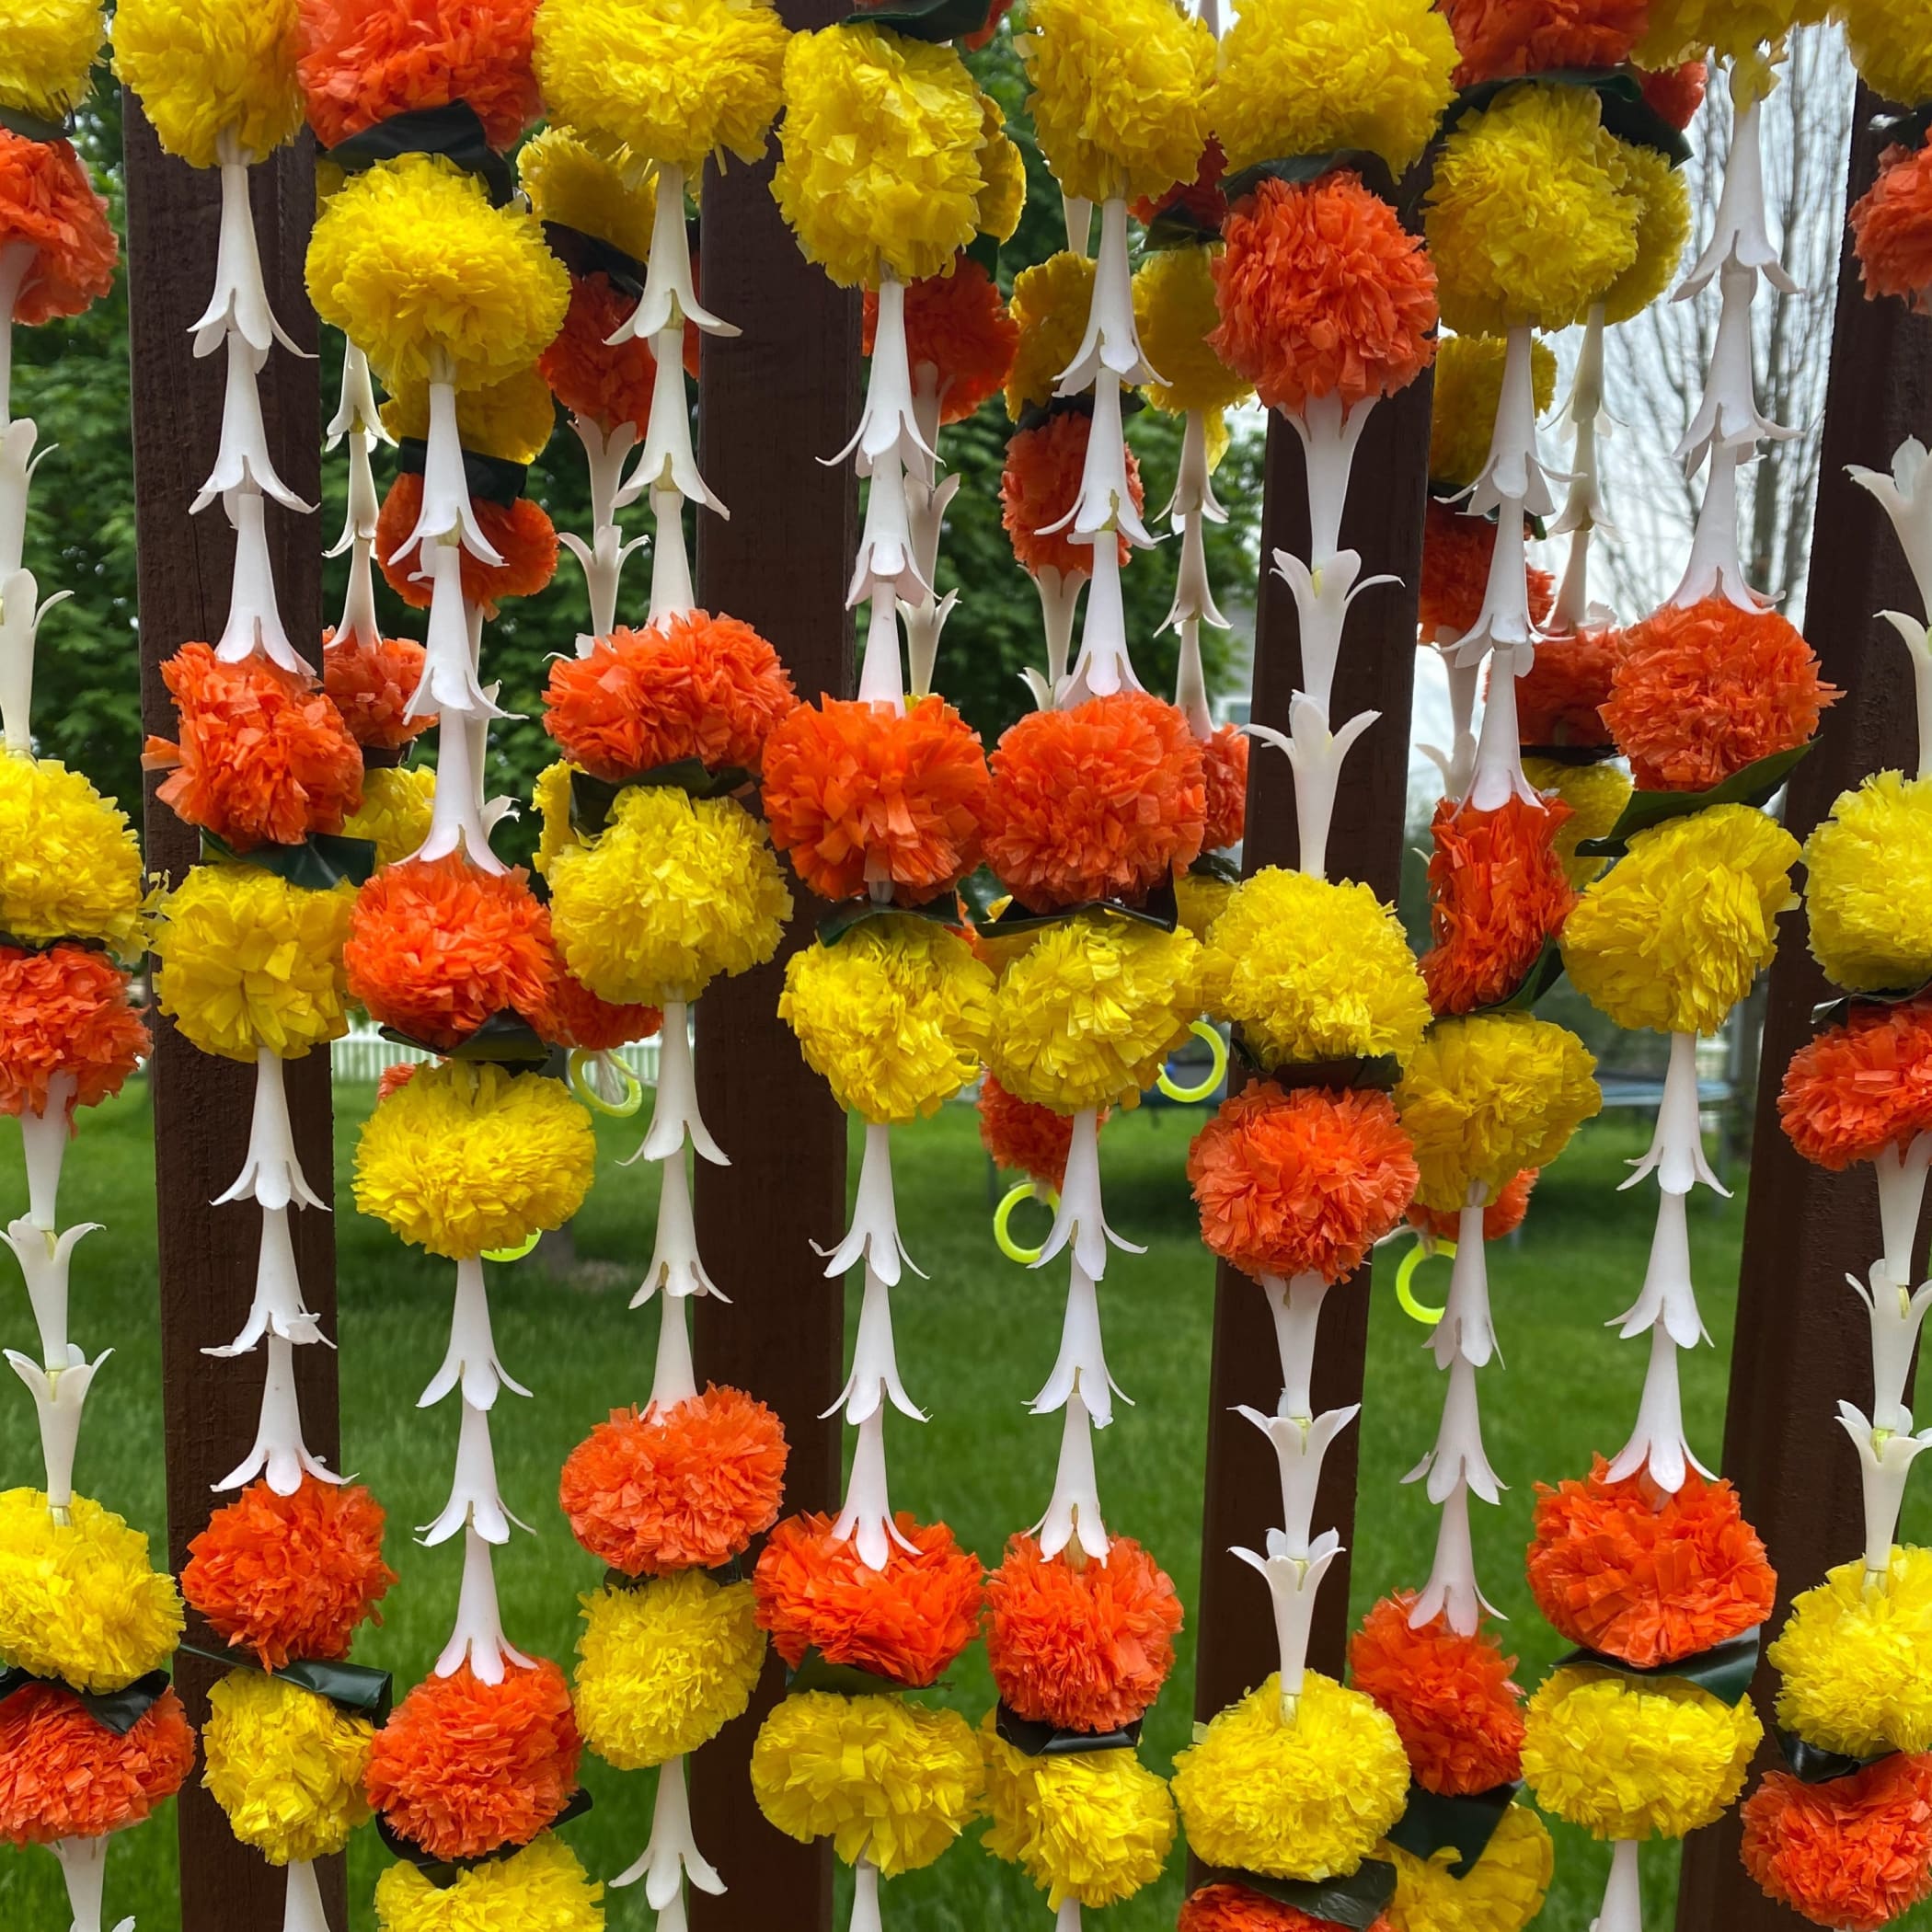 Tuberrose marigold mogra flower string diwali decoration